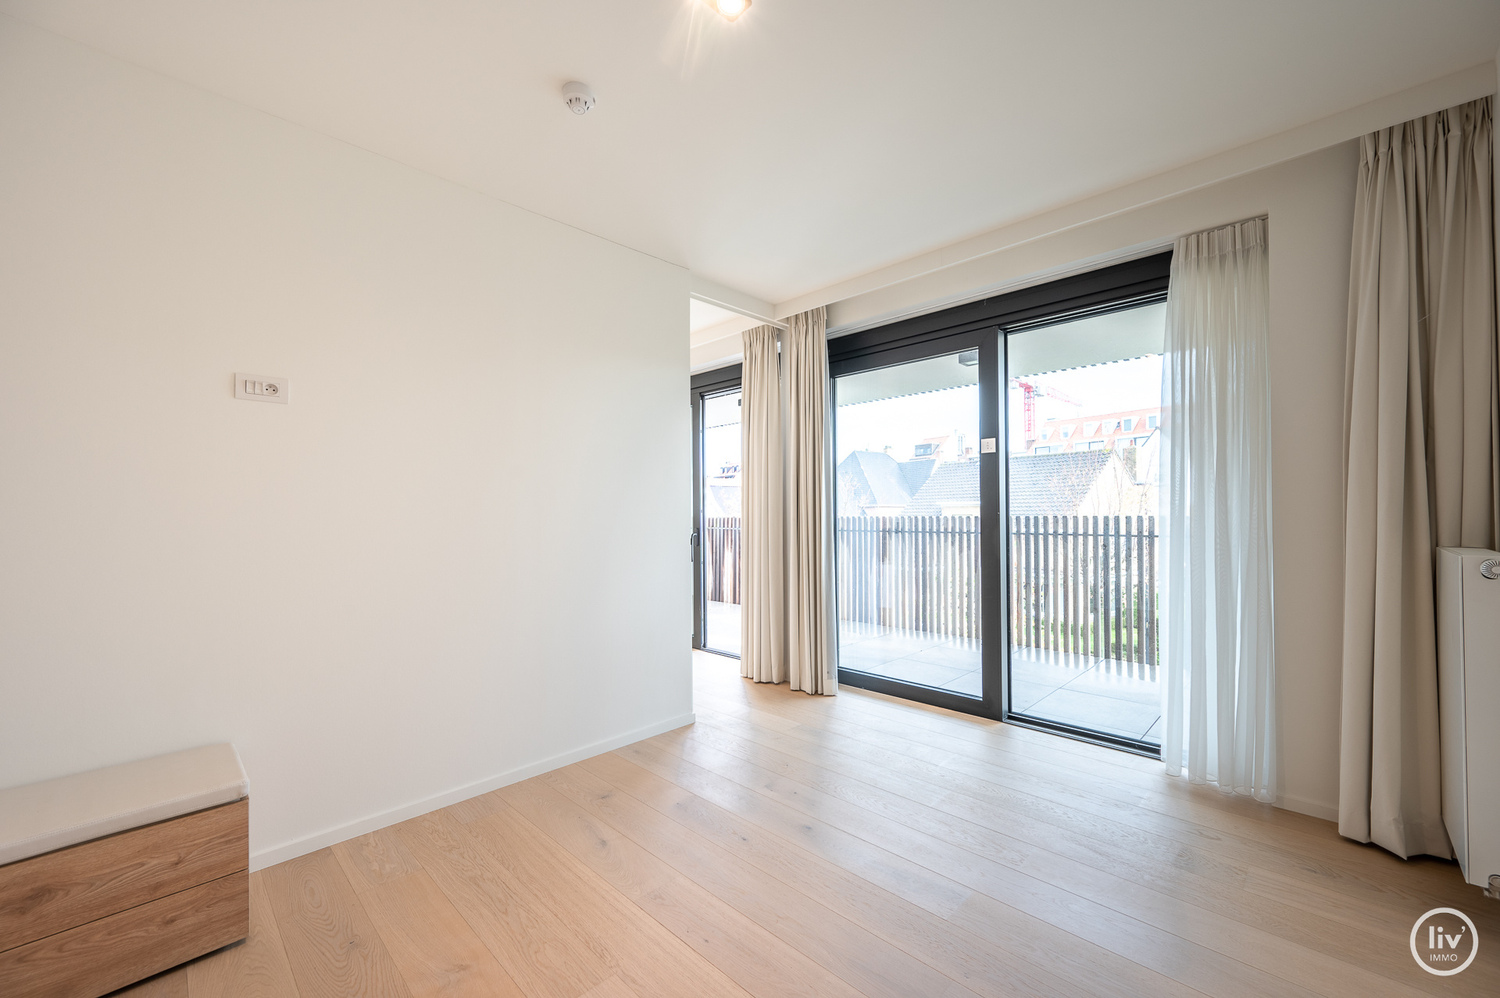 SERVICEFLAT: Lichtrijk 1-slaapkamer appartement nabij de Konings &amp; Lippenslaan in de Residentie Cypres. 